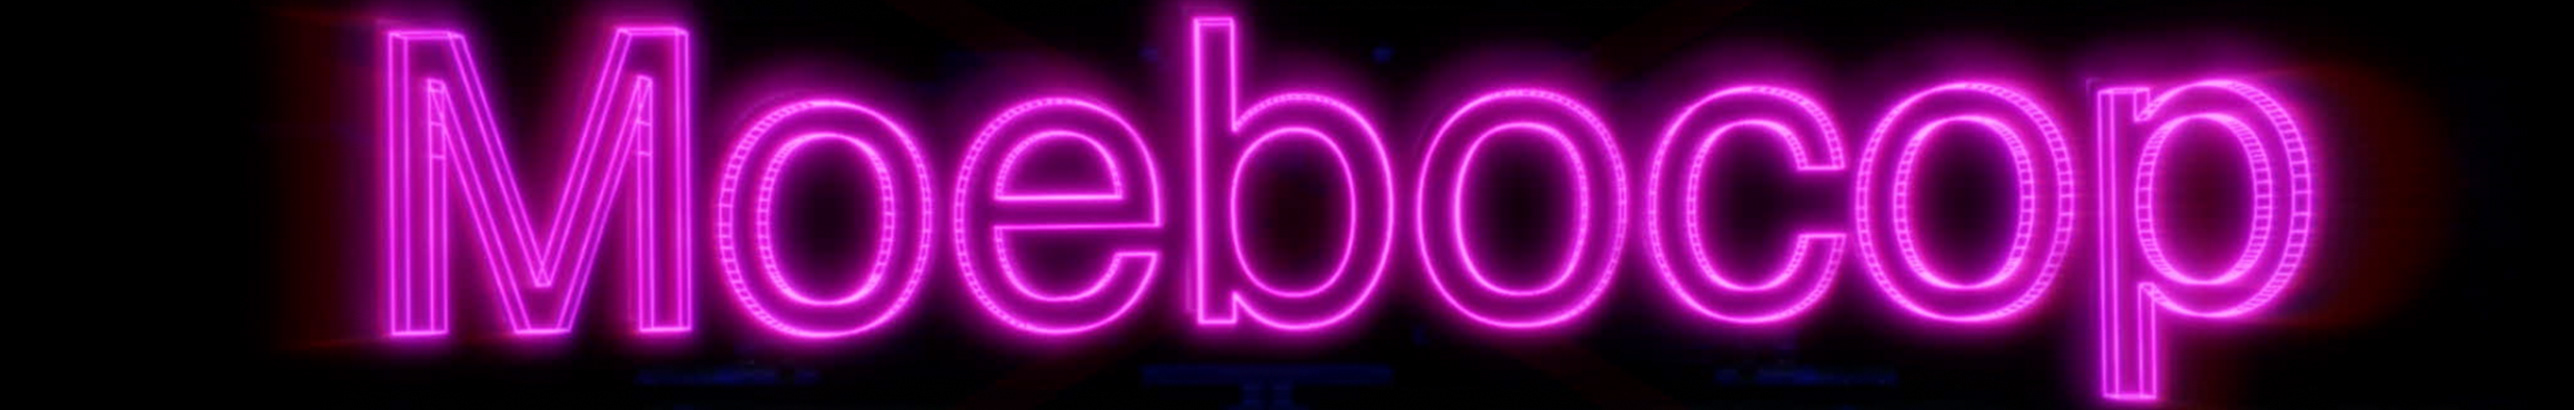 Studio Moebocop's profile banner